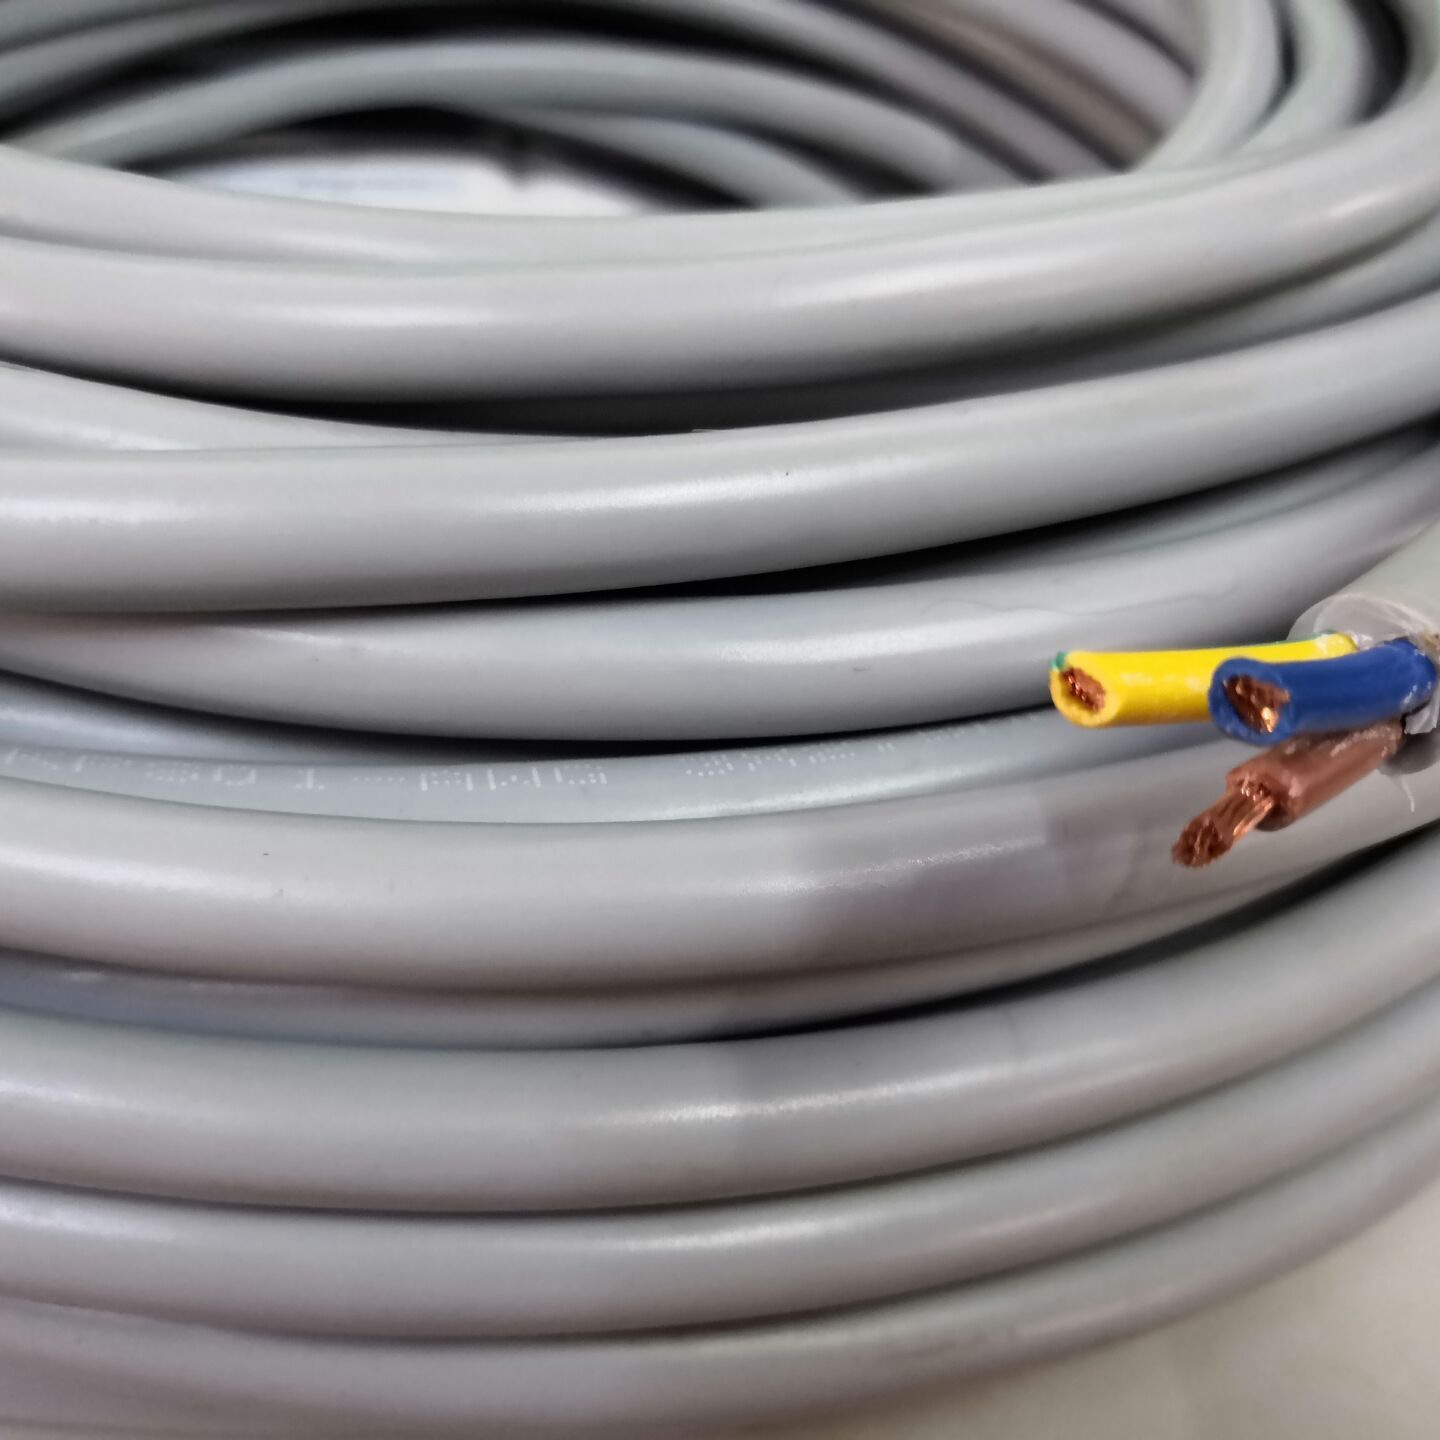 Comprar Cable gris 300/500V 450/750V, Cable gris 300/500V 450/750V Precios, Cable gris 300/500V 450/750V Marcas, Cable gris 300/500V 450/750V Fabricante, Cable gris 300/500V 450/750V Citas, Cable gris 300/500V 450/750V Empresa.